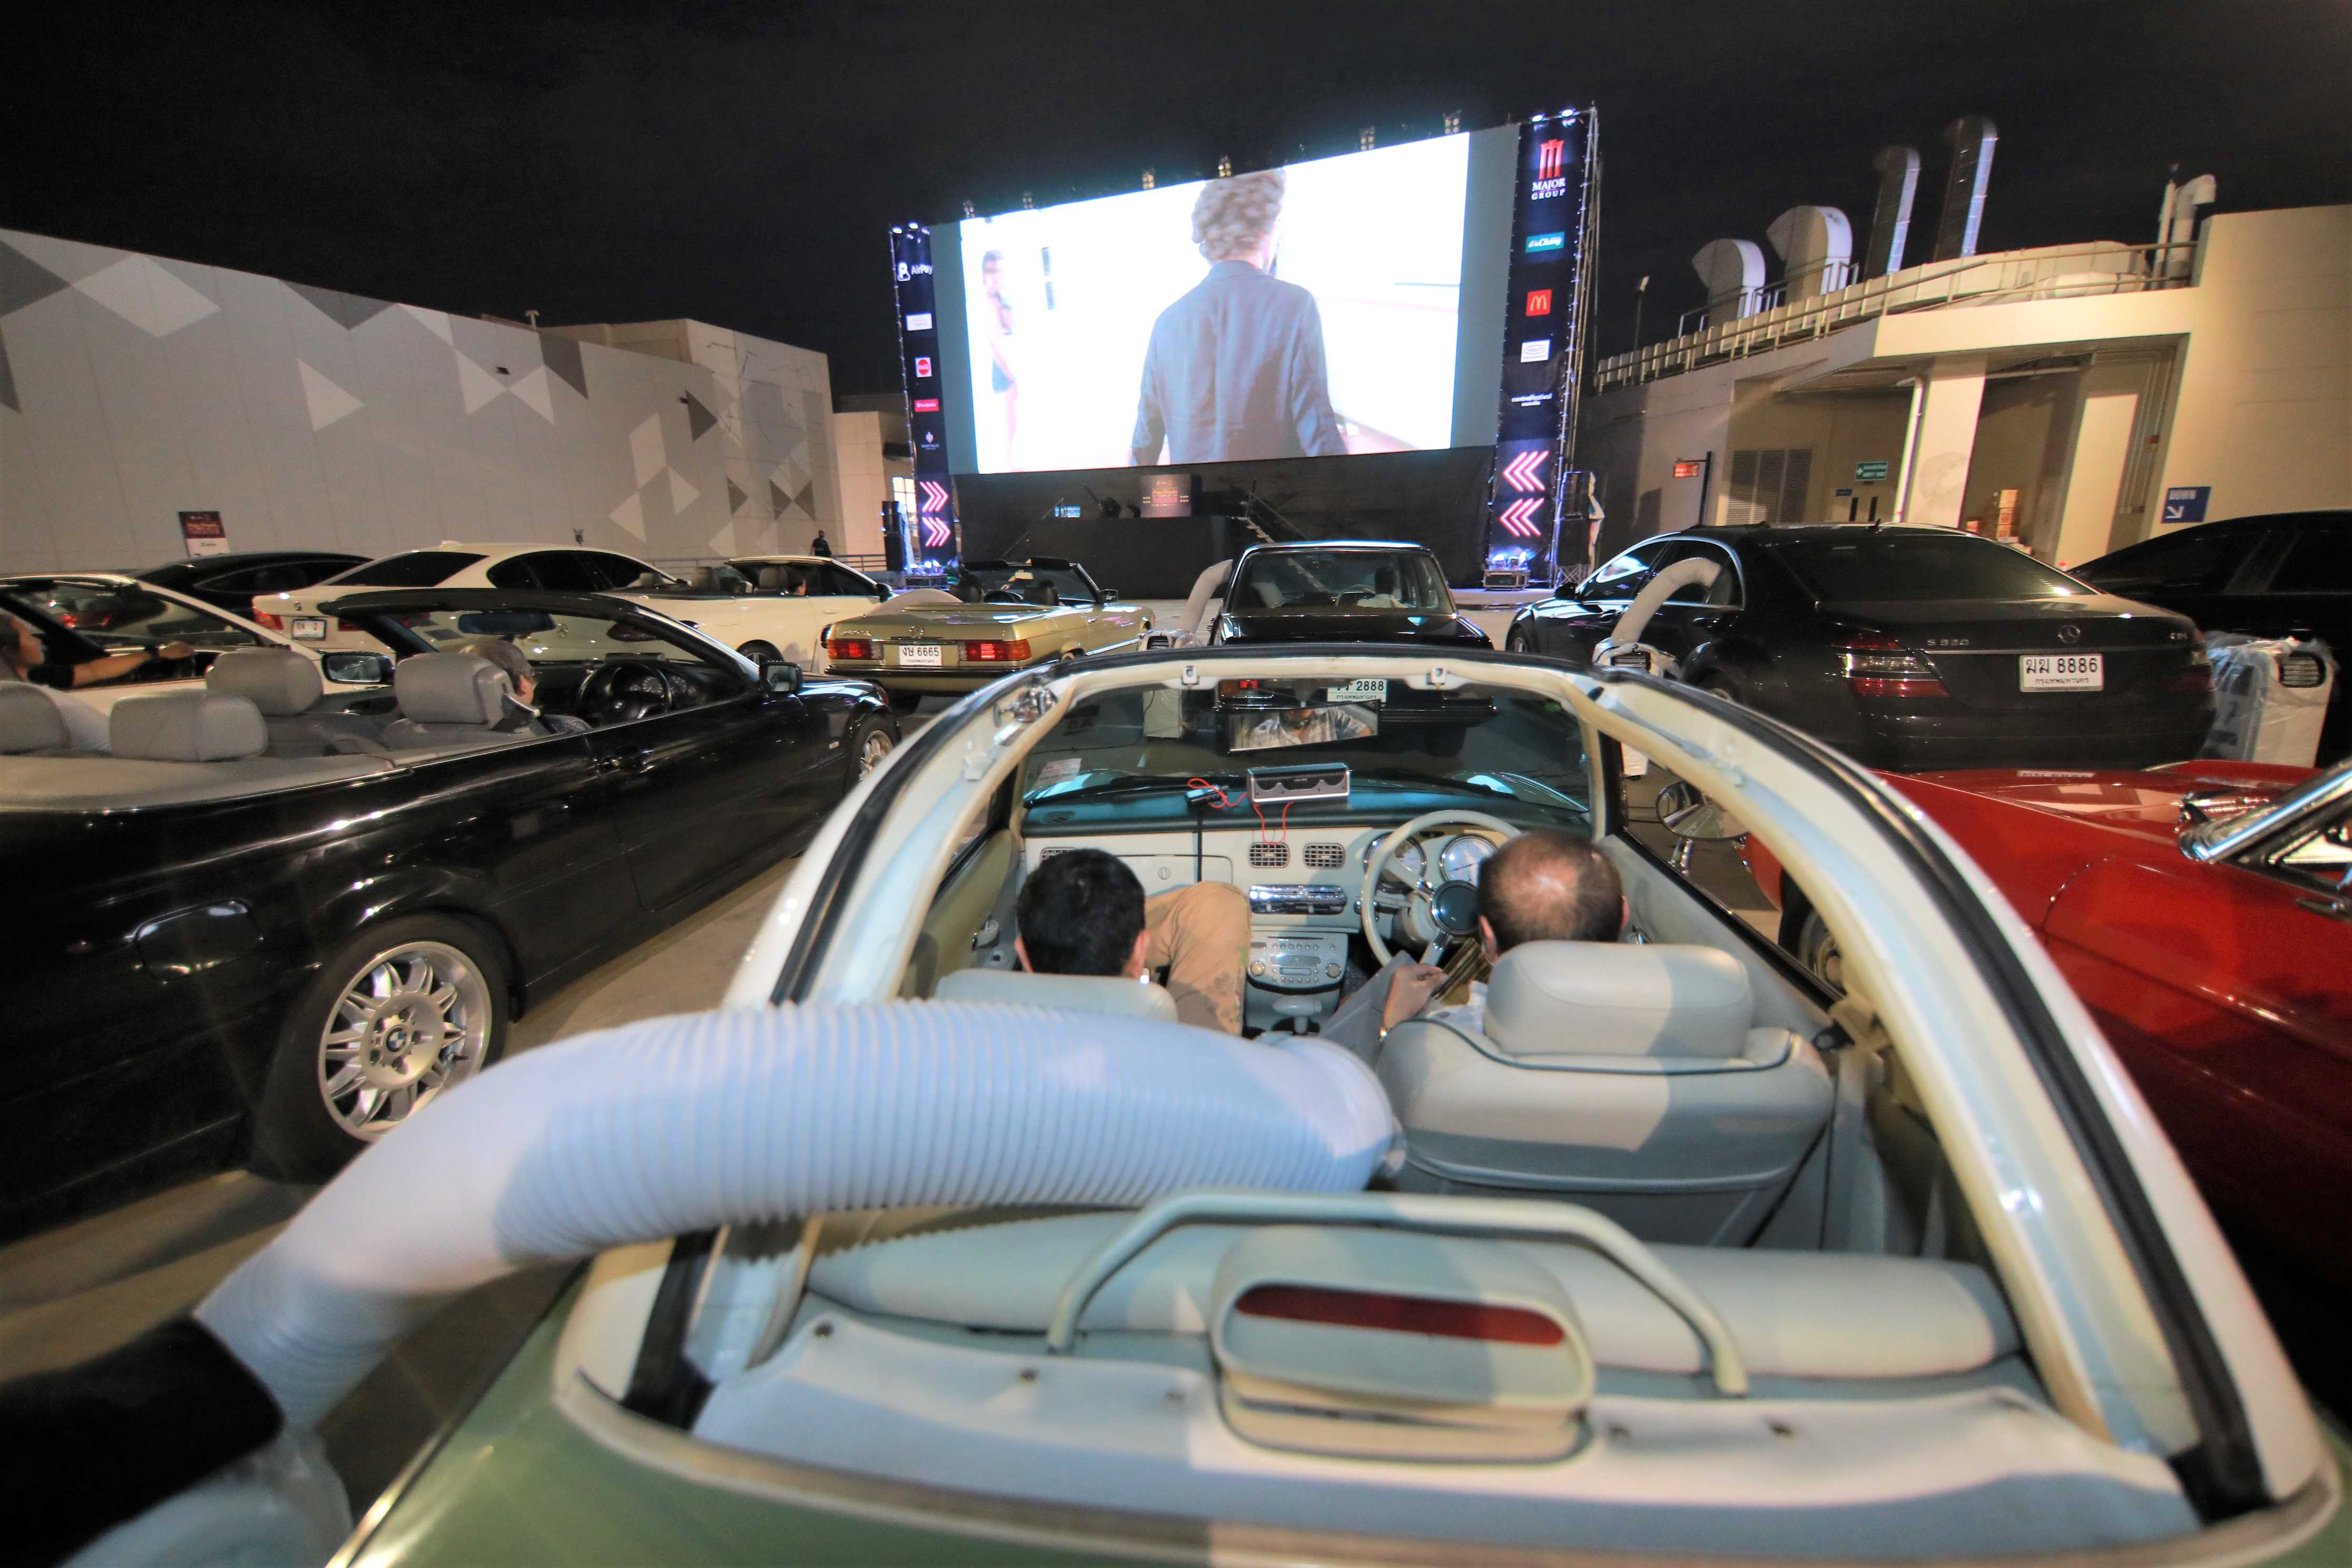 ประมวลภาพ Drive-In Theater ลอยฟ้าสุดคูลโดย เมเจอร์ ดูหนังวิถีใหม่แบบชิลๆ